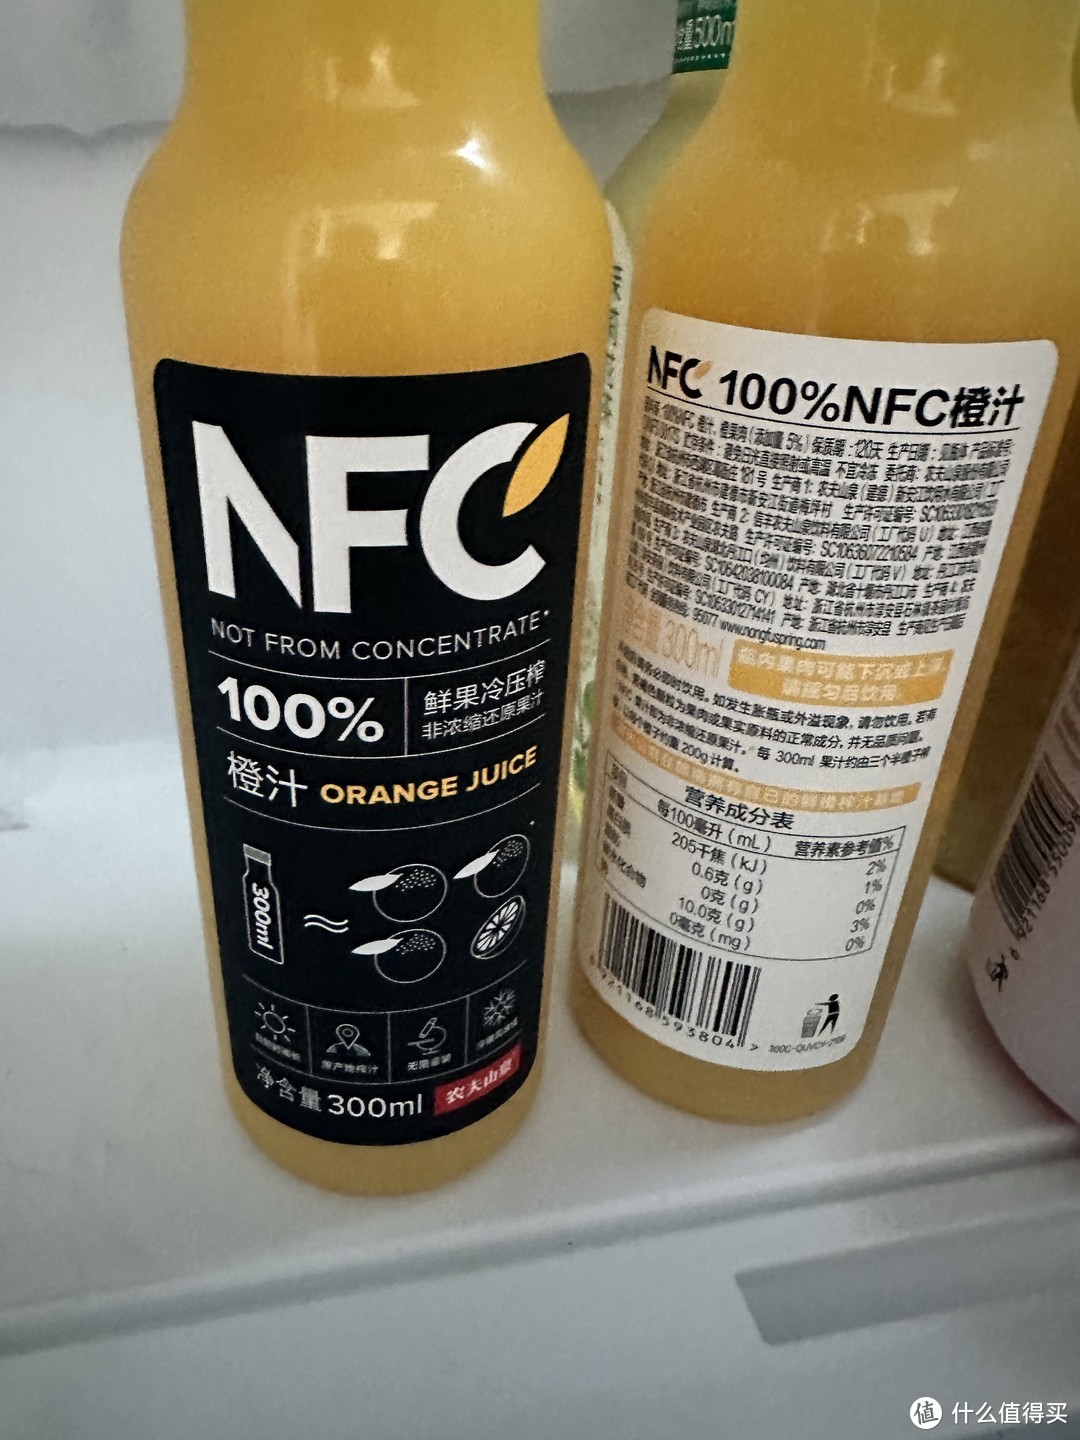 纯天然的高质量的非浓缩果汁饮料-农夫山泉NFC